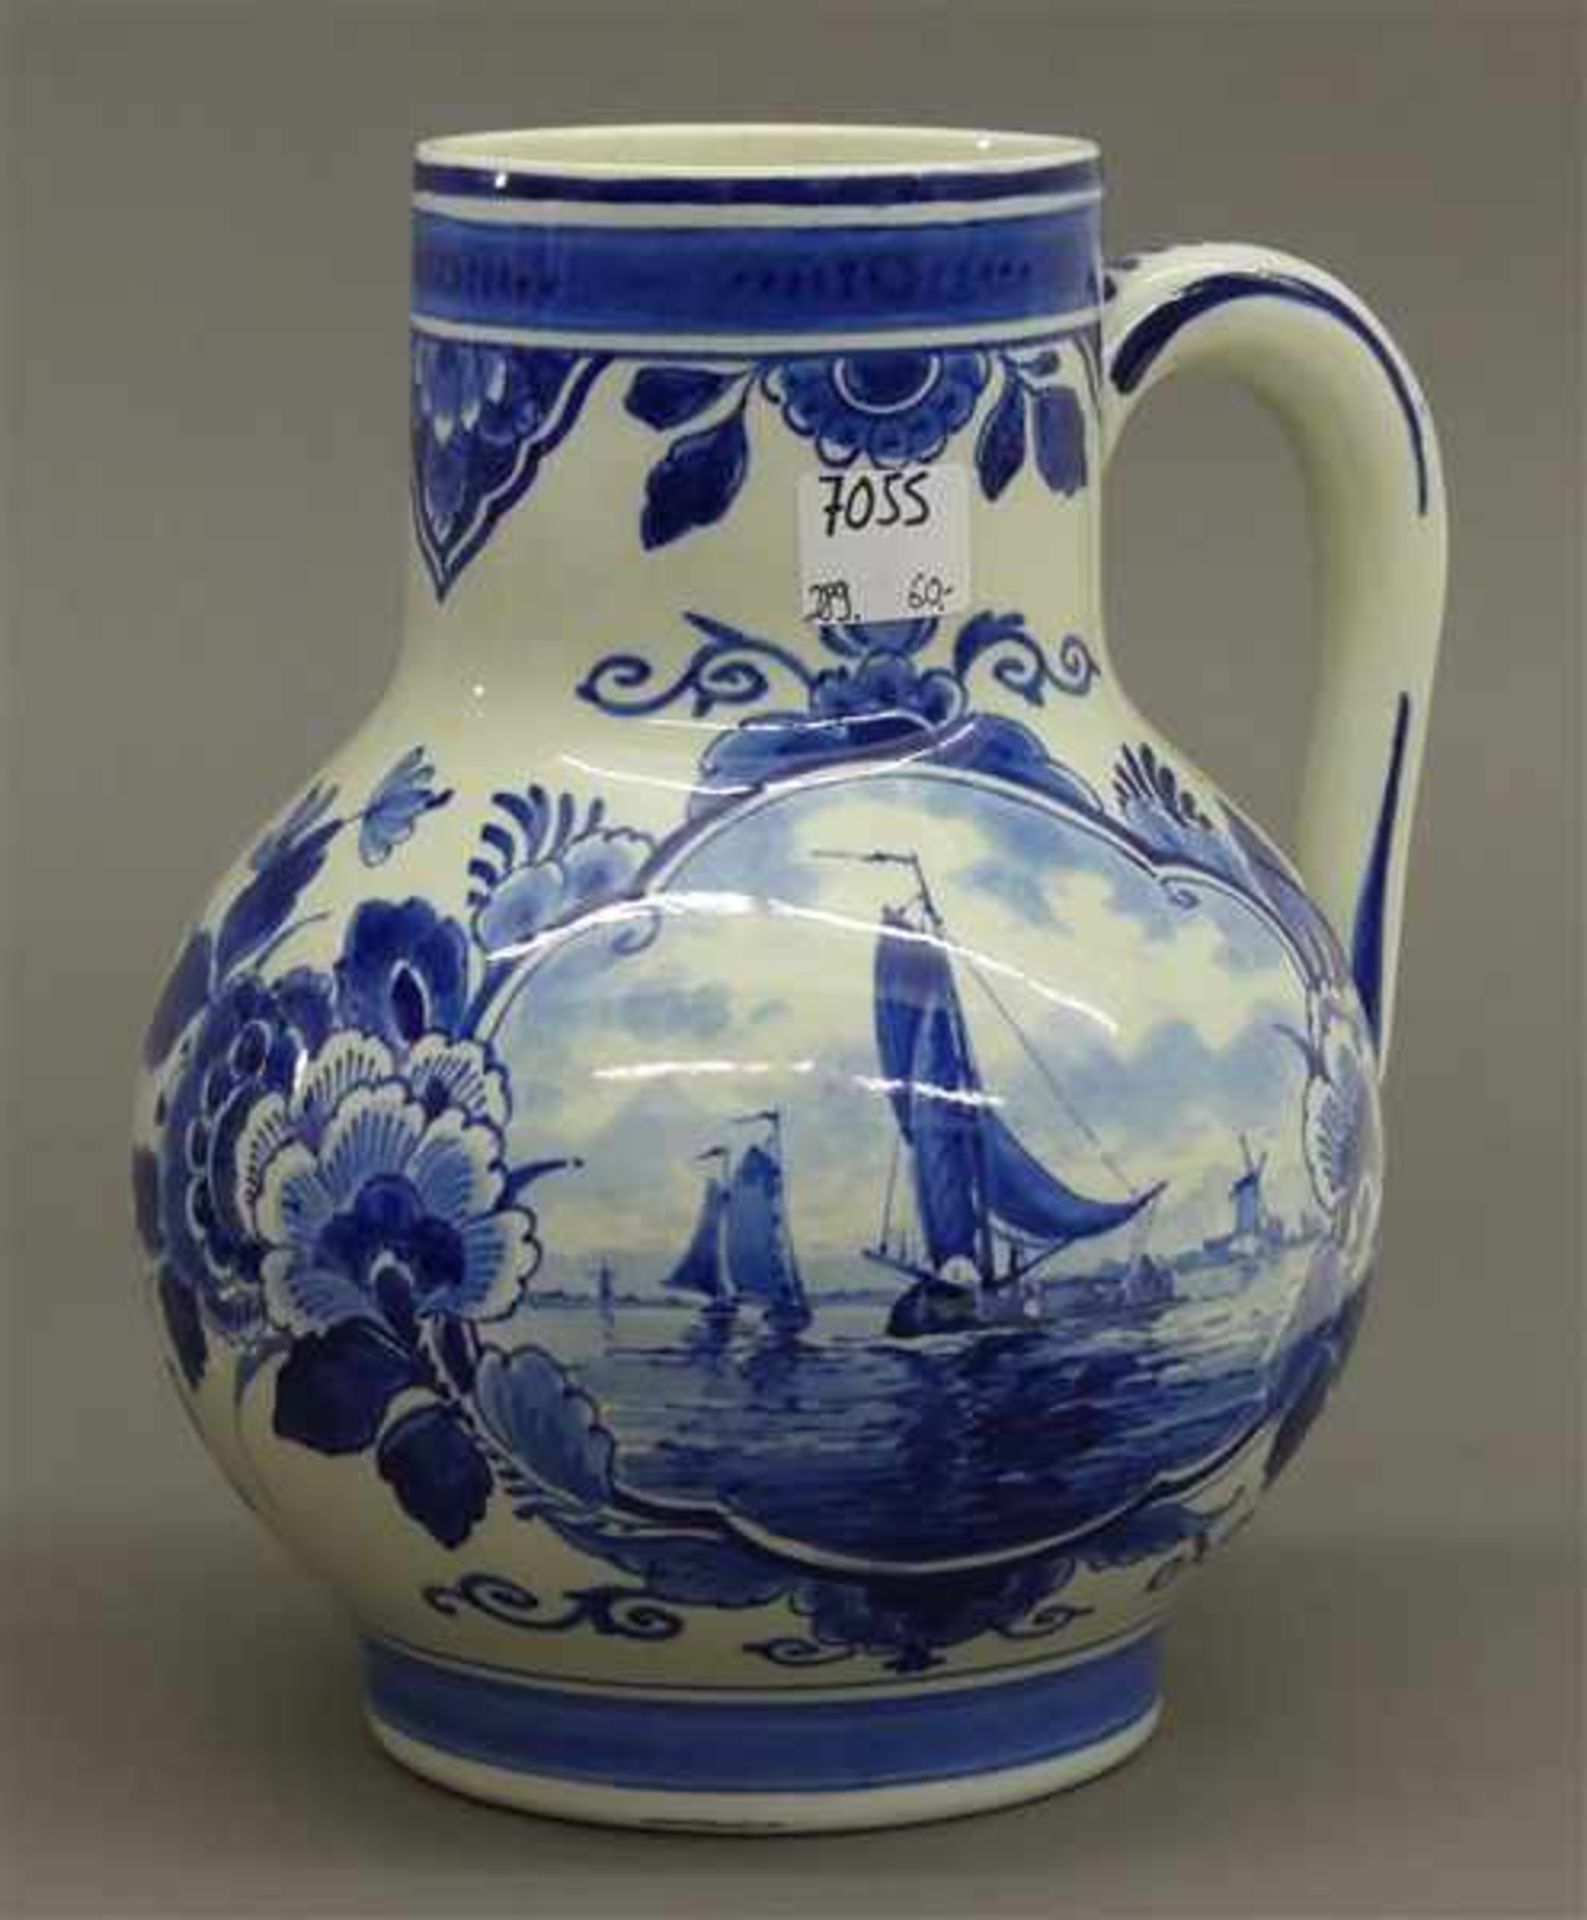 Keramikkanneblau-weiß, Medaillon mit Booten und Windmühle, blaue Bodenmarke, Manufaktur Delft, h